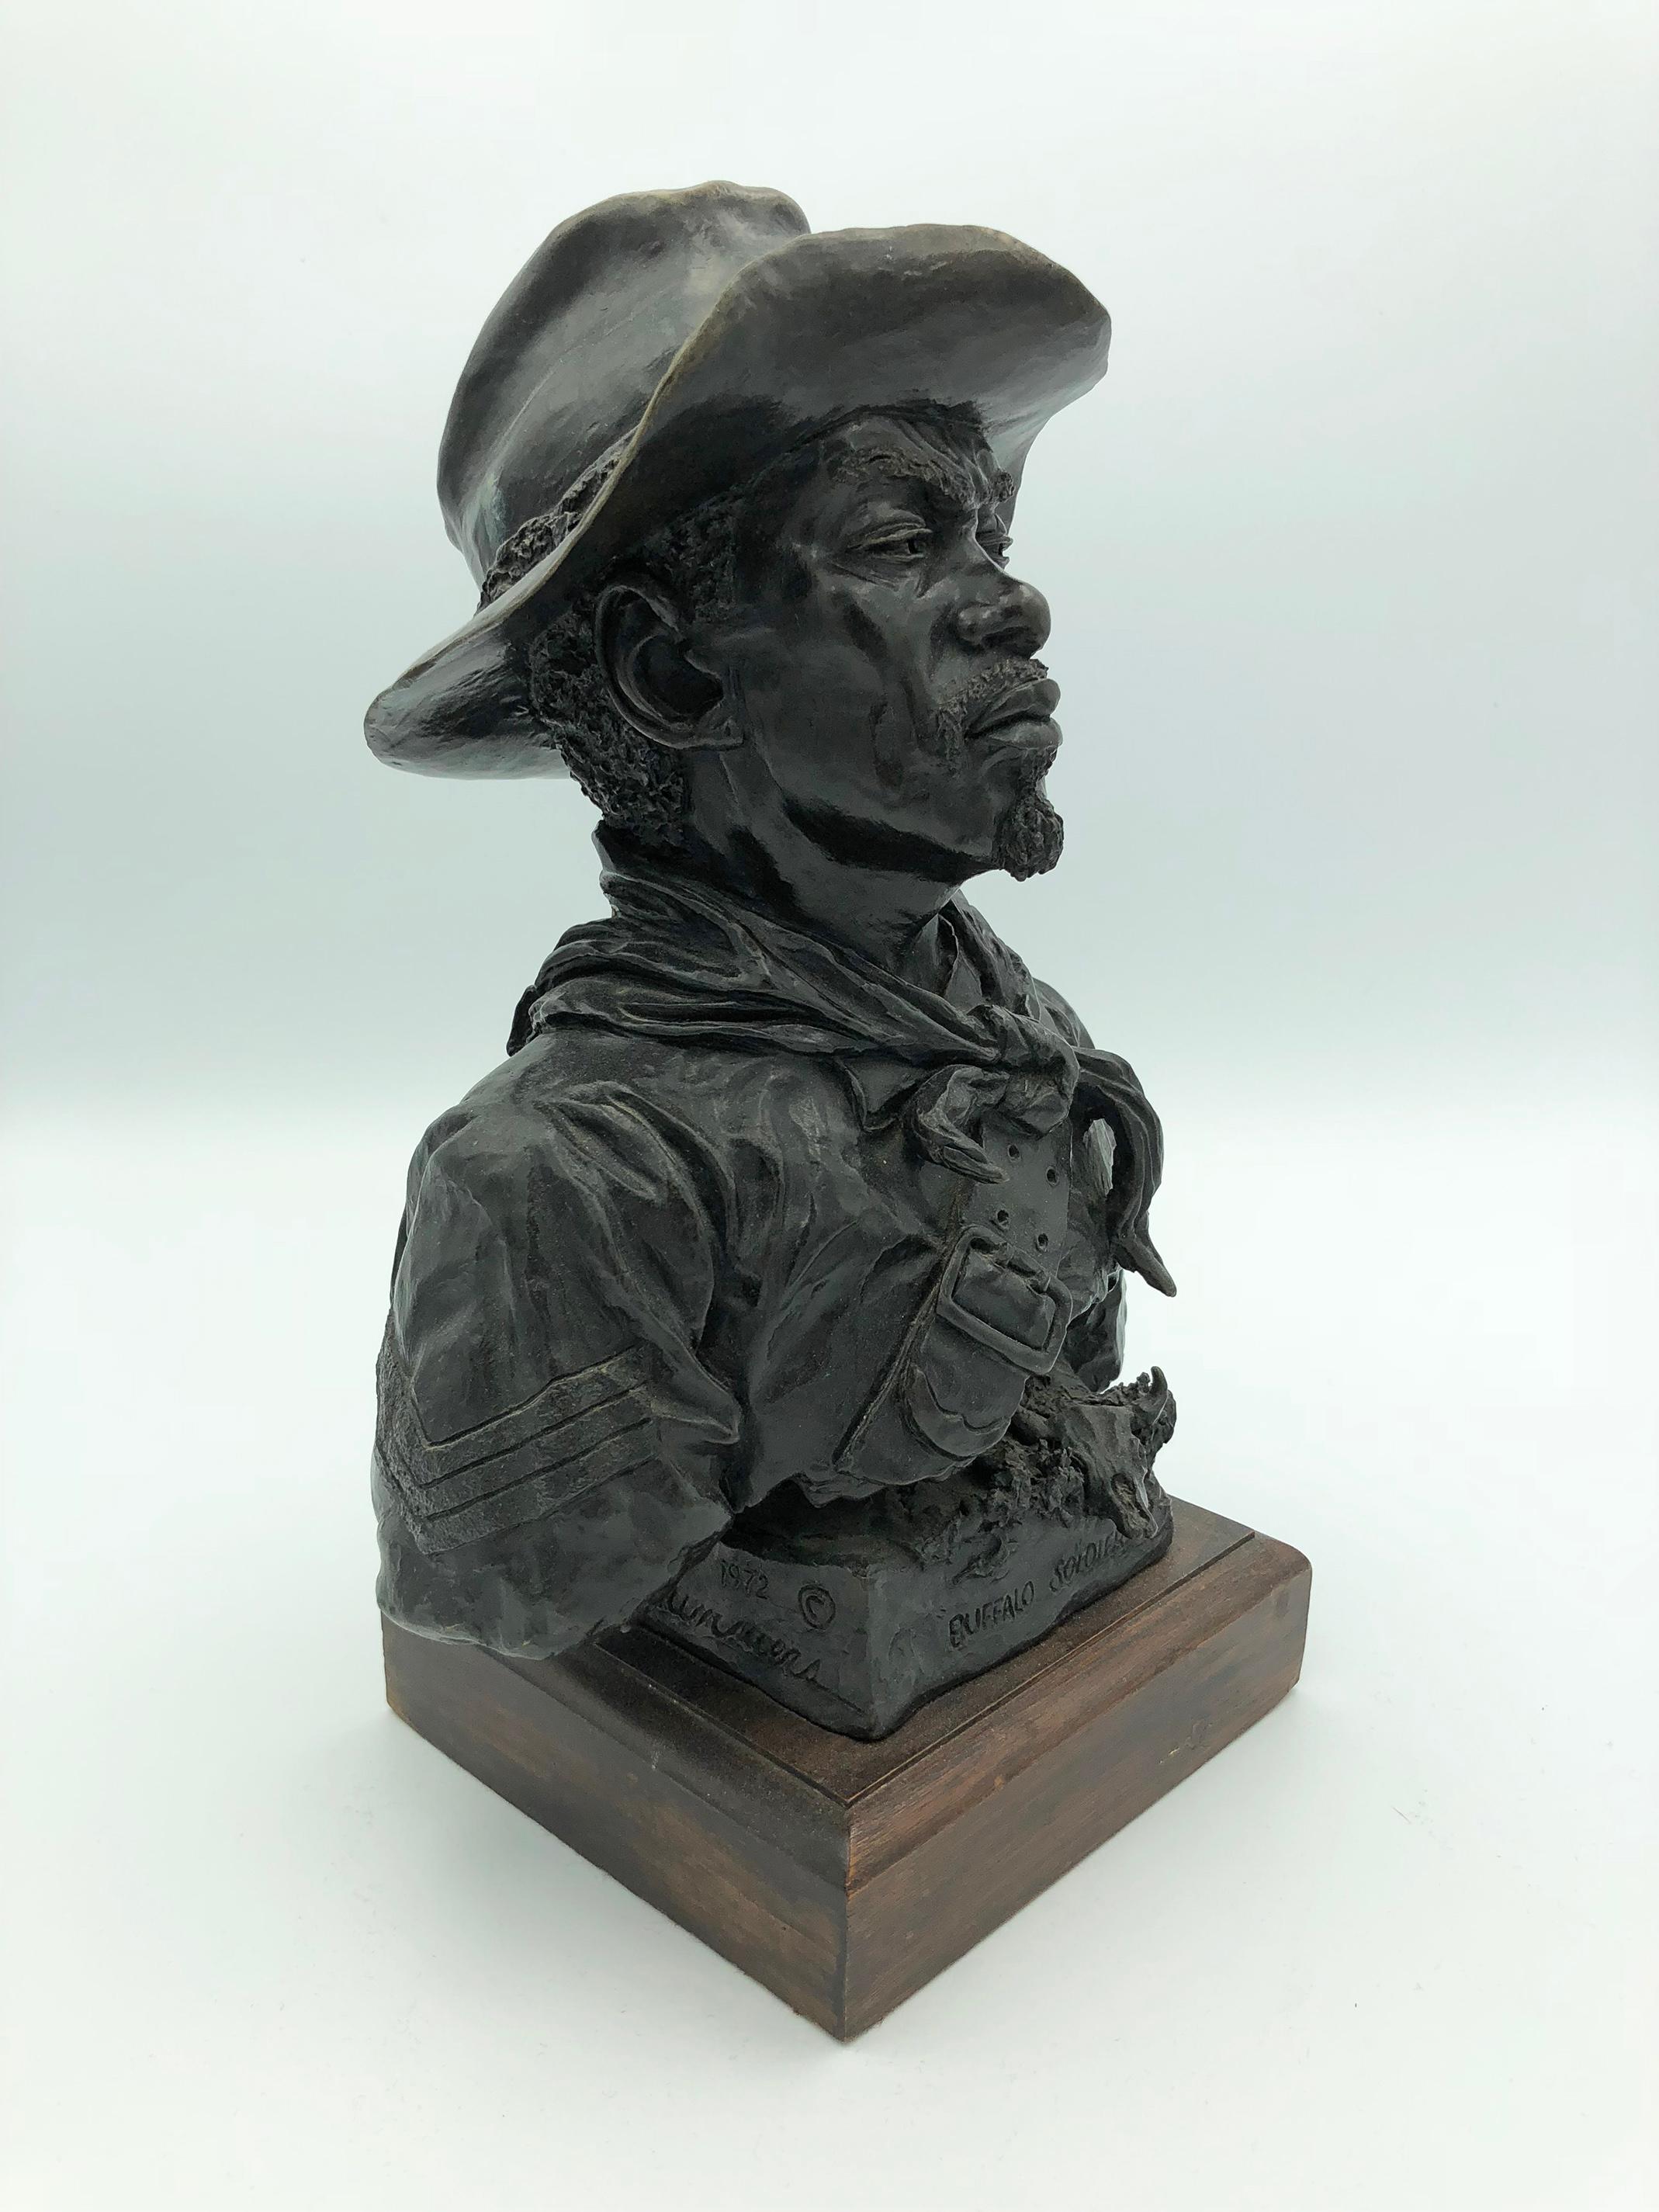 Bob Scriver Figurative Sculpture - "Buffalo Soldier, Tenth Cavalry 1875"